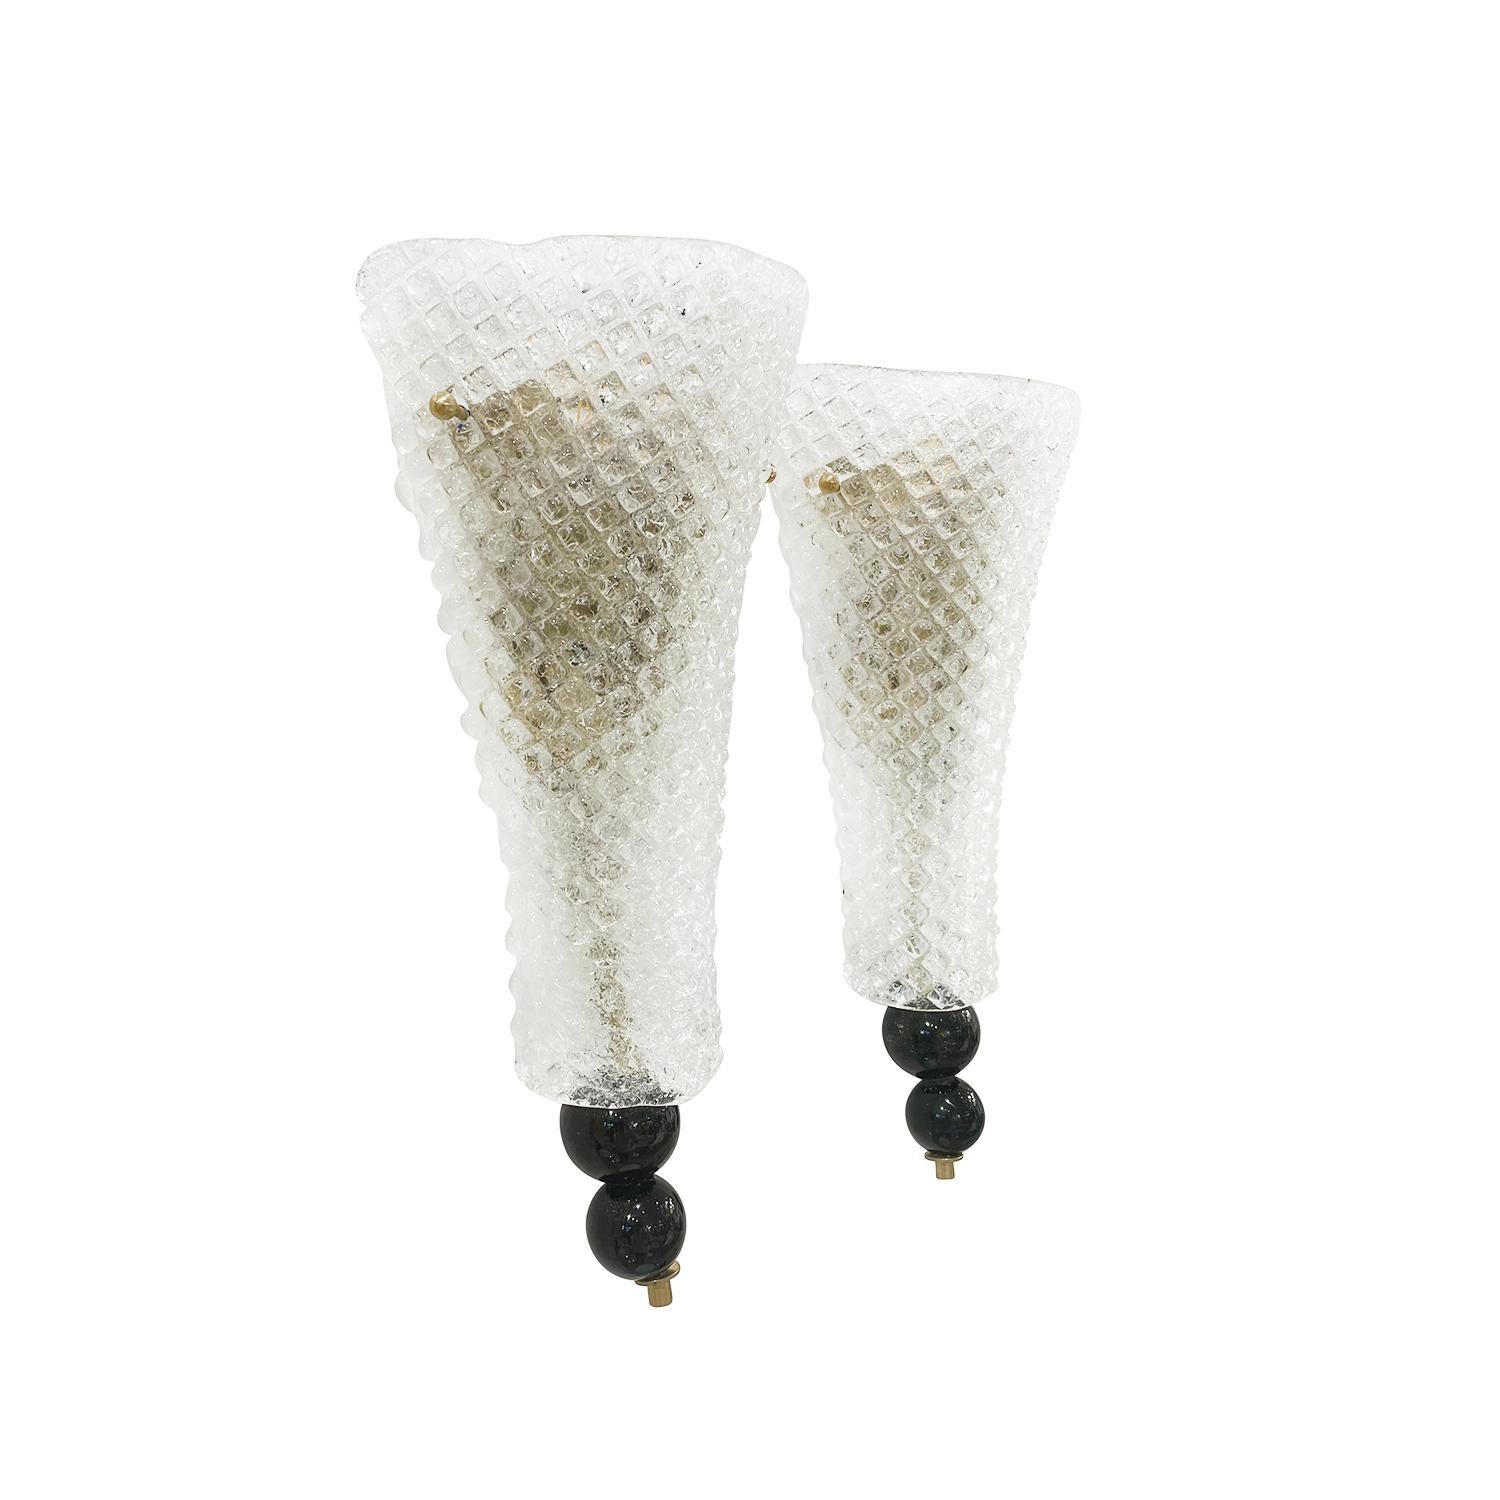 Paire de petites appliques tulipes en verre de Murano fumé, soufflé à la main, en bon état. Chacune des appliques est caractérisée par deux sphères noires qui sont soutenues par une tige flexible en laiton, dotée d'une douille à deux lumières. Les